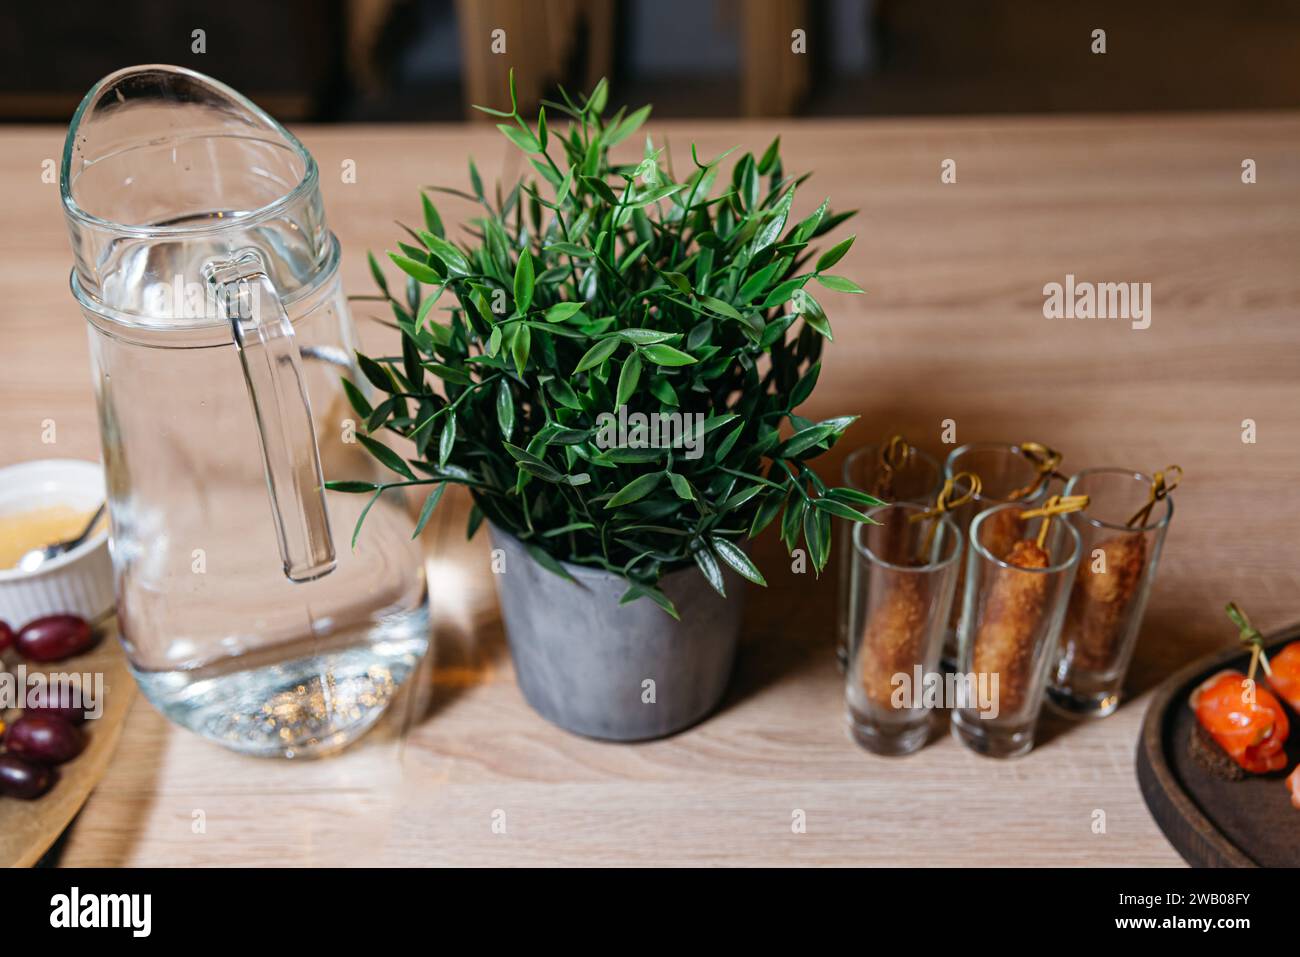 Una caraffa d'acqua contemporanea in vetro accanto a una lussureggiante pianta in vaso verde su un tavolo di legno, creando un ambiente pulito e rinfrescante. Foto Stock